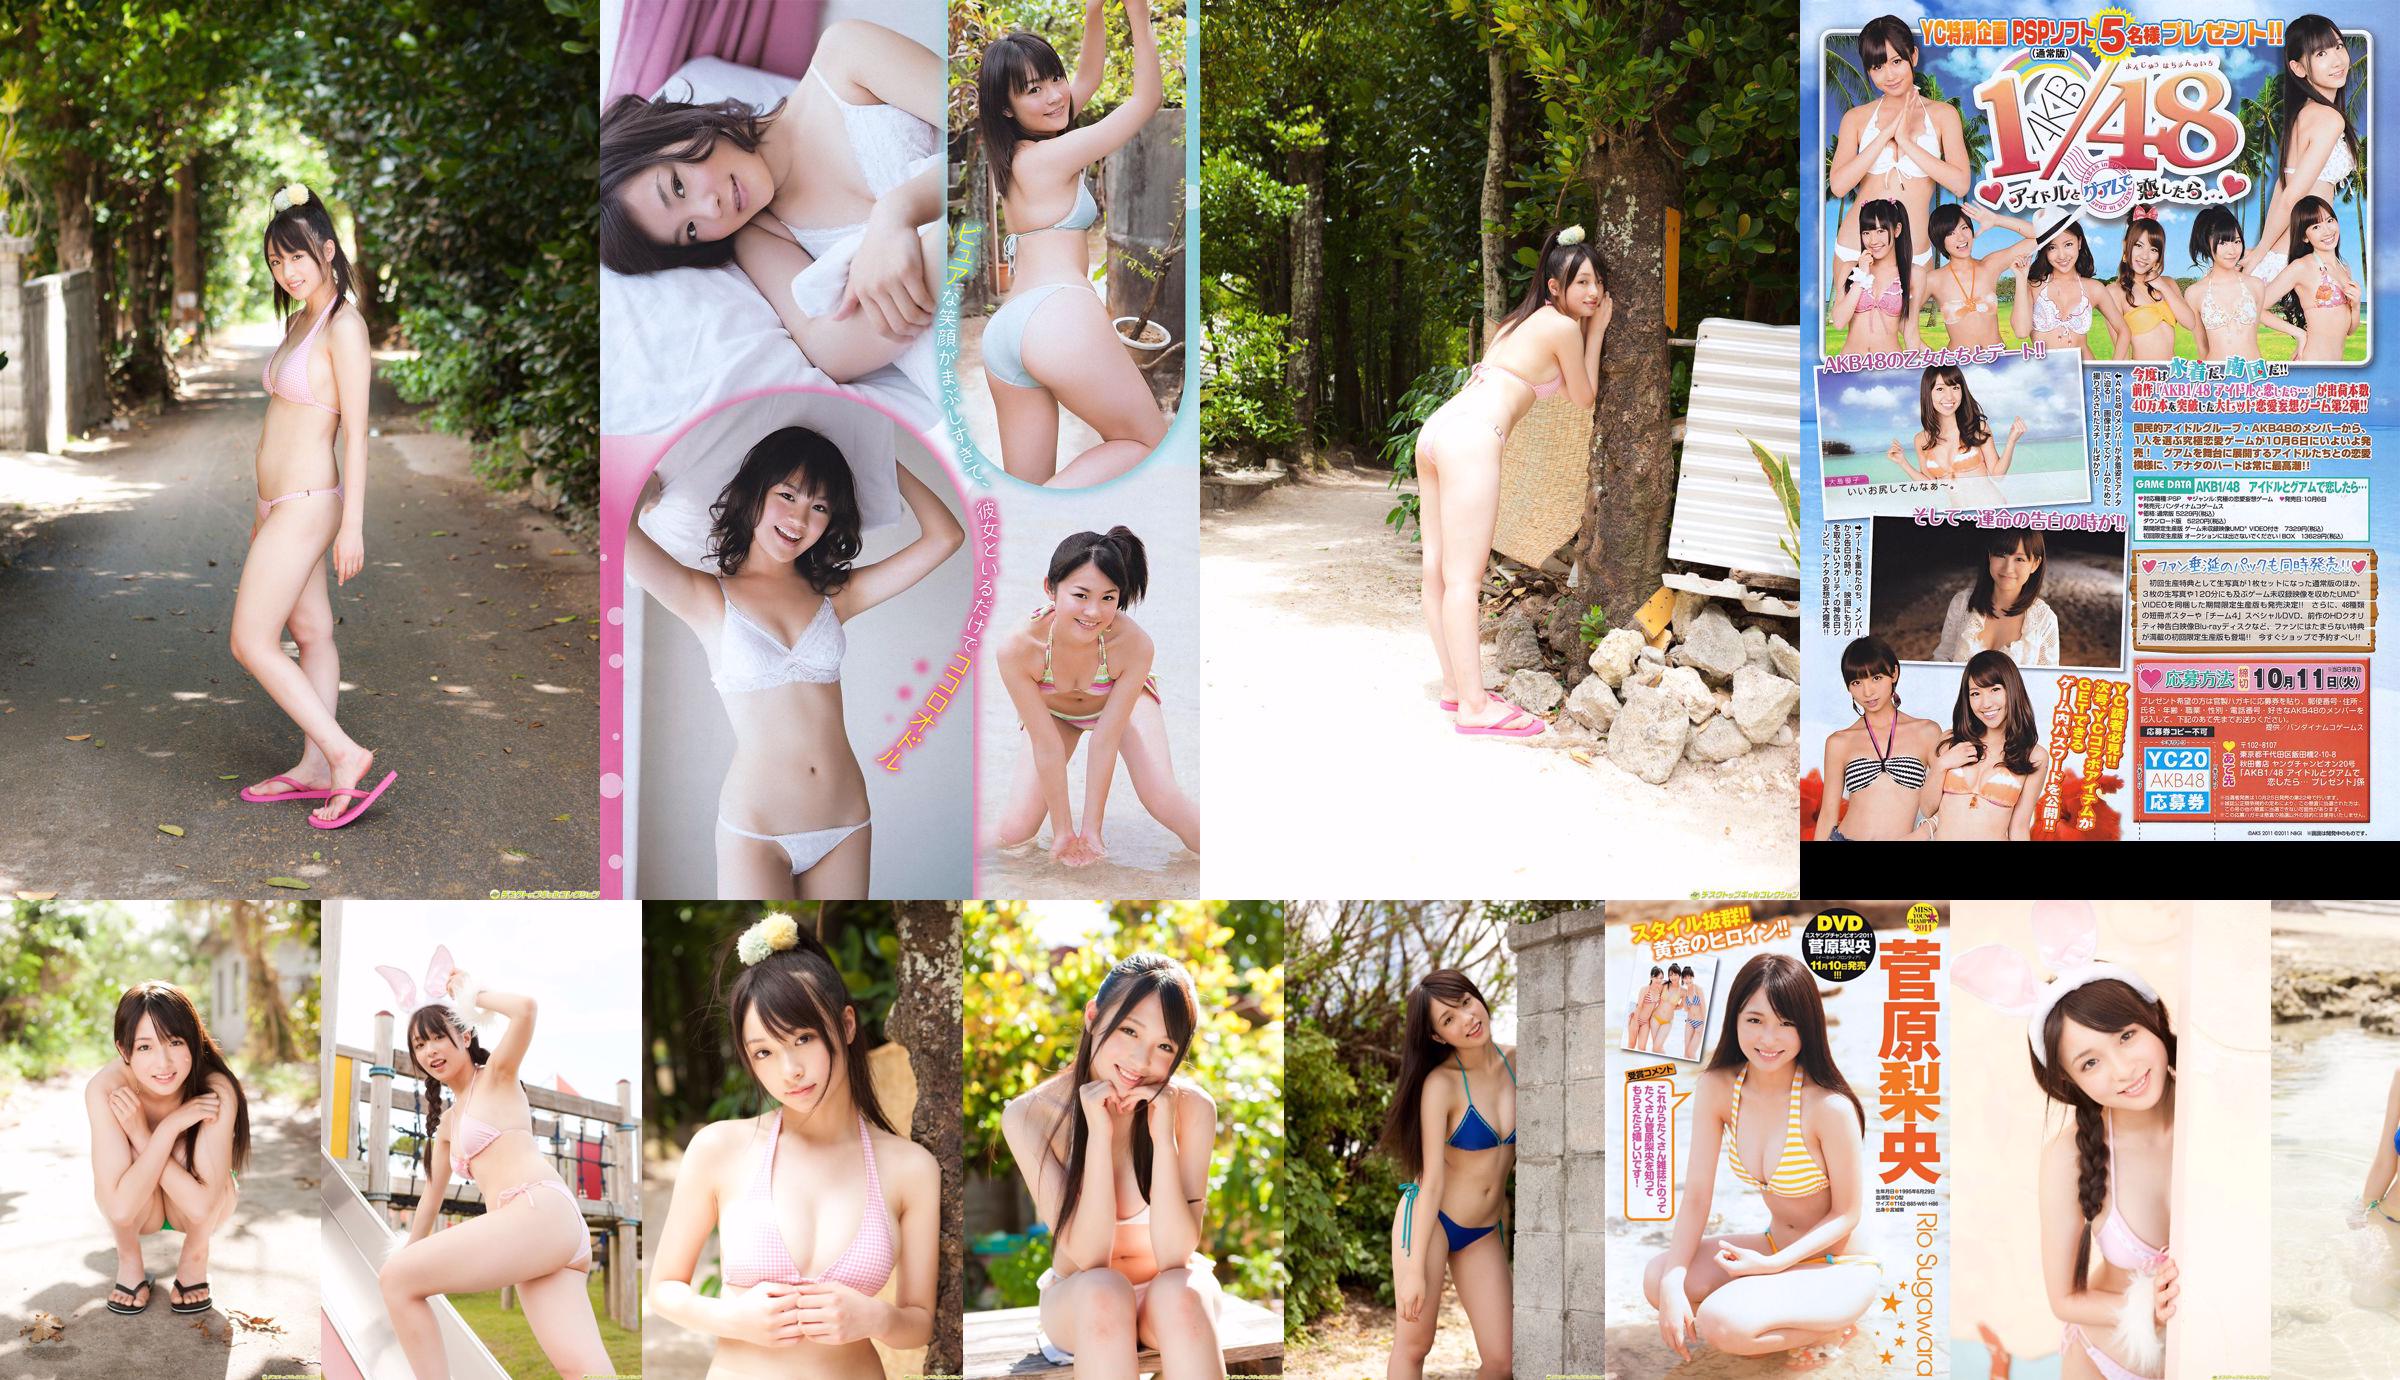 [Young Champion] Sugawara Risa, Horikawa Mikako, Matsushima no か 2011 No. 20 Photo Magazine No.cba4d3 Page 1